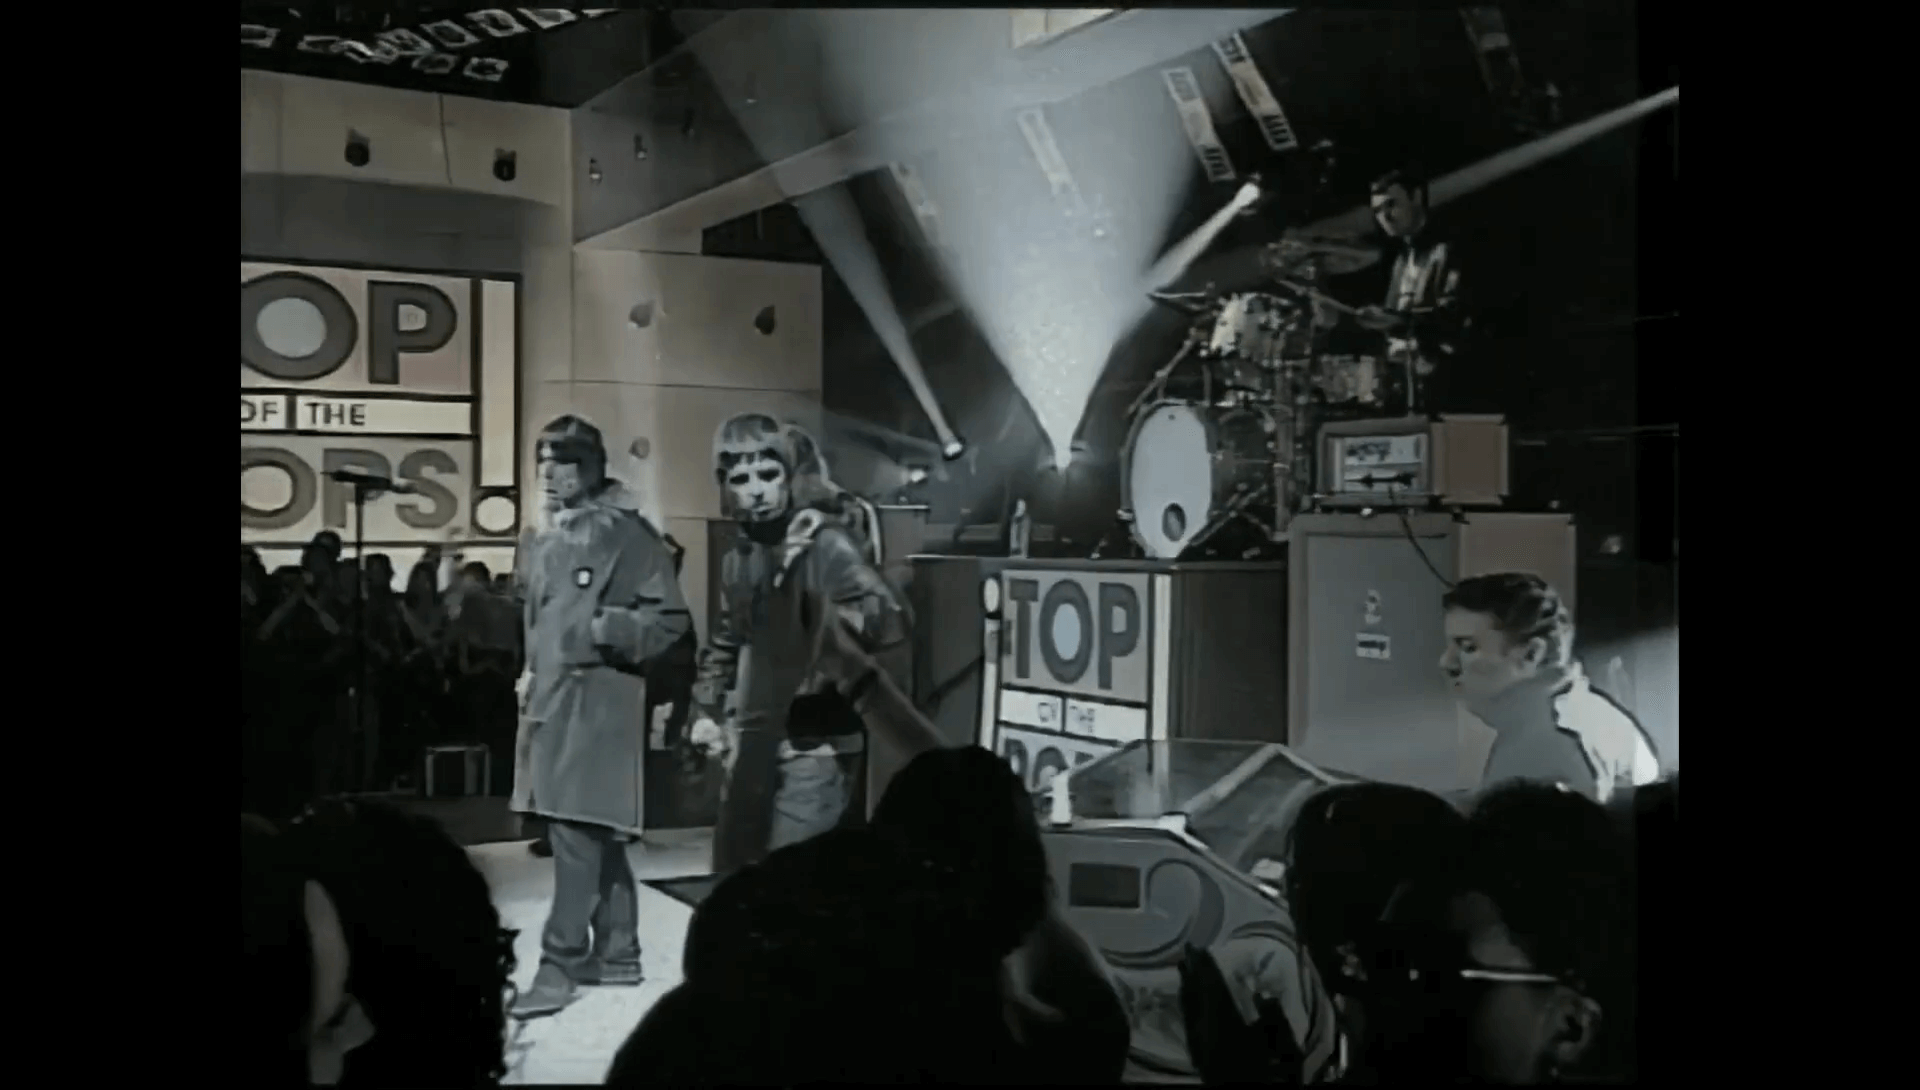 Oasis at Estree Studios, London - 